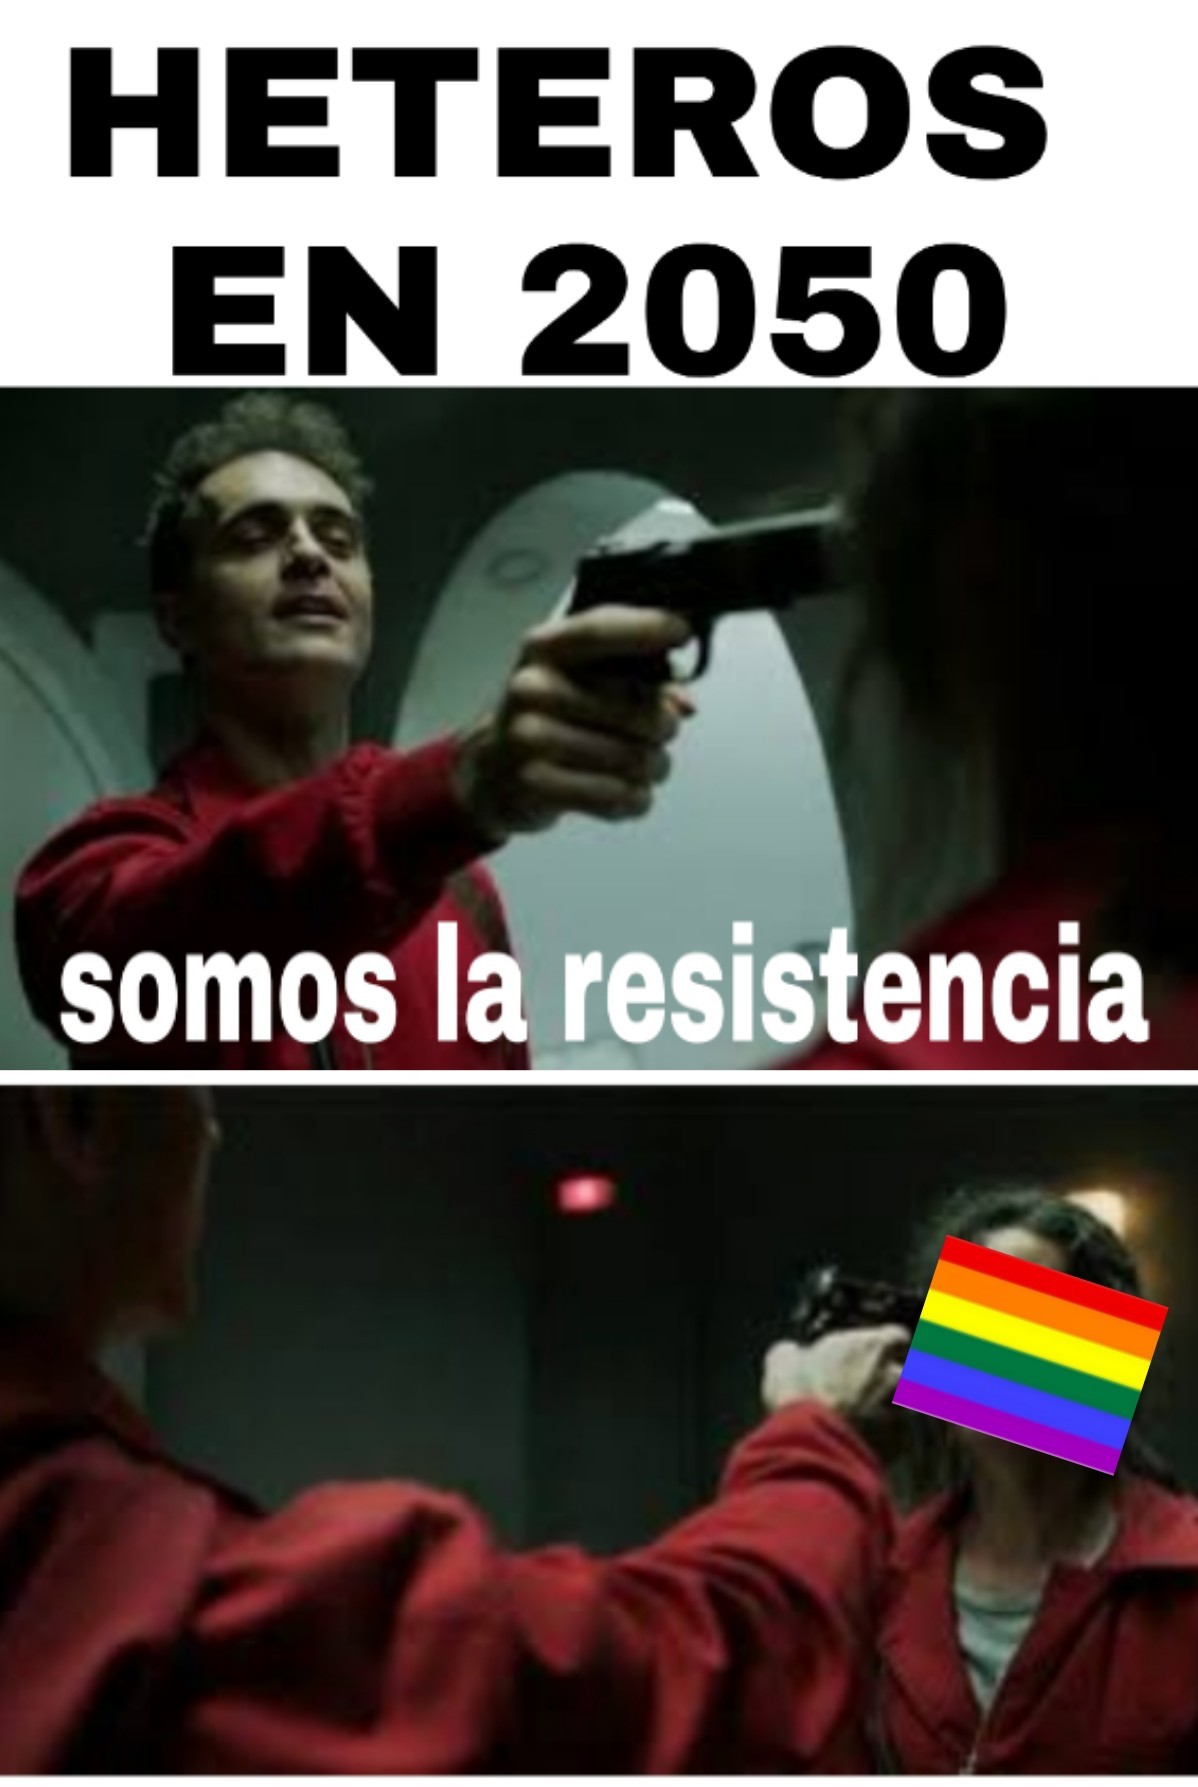 SOMOS LA RESISTENCIA!!! - meme